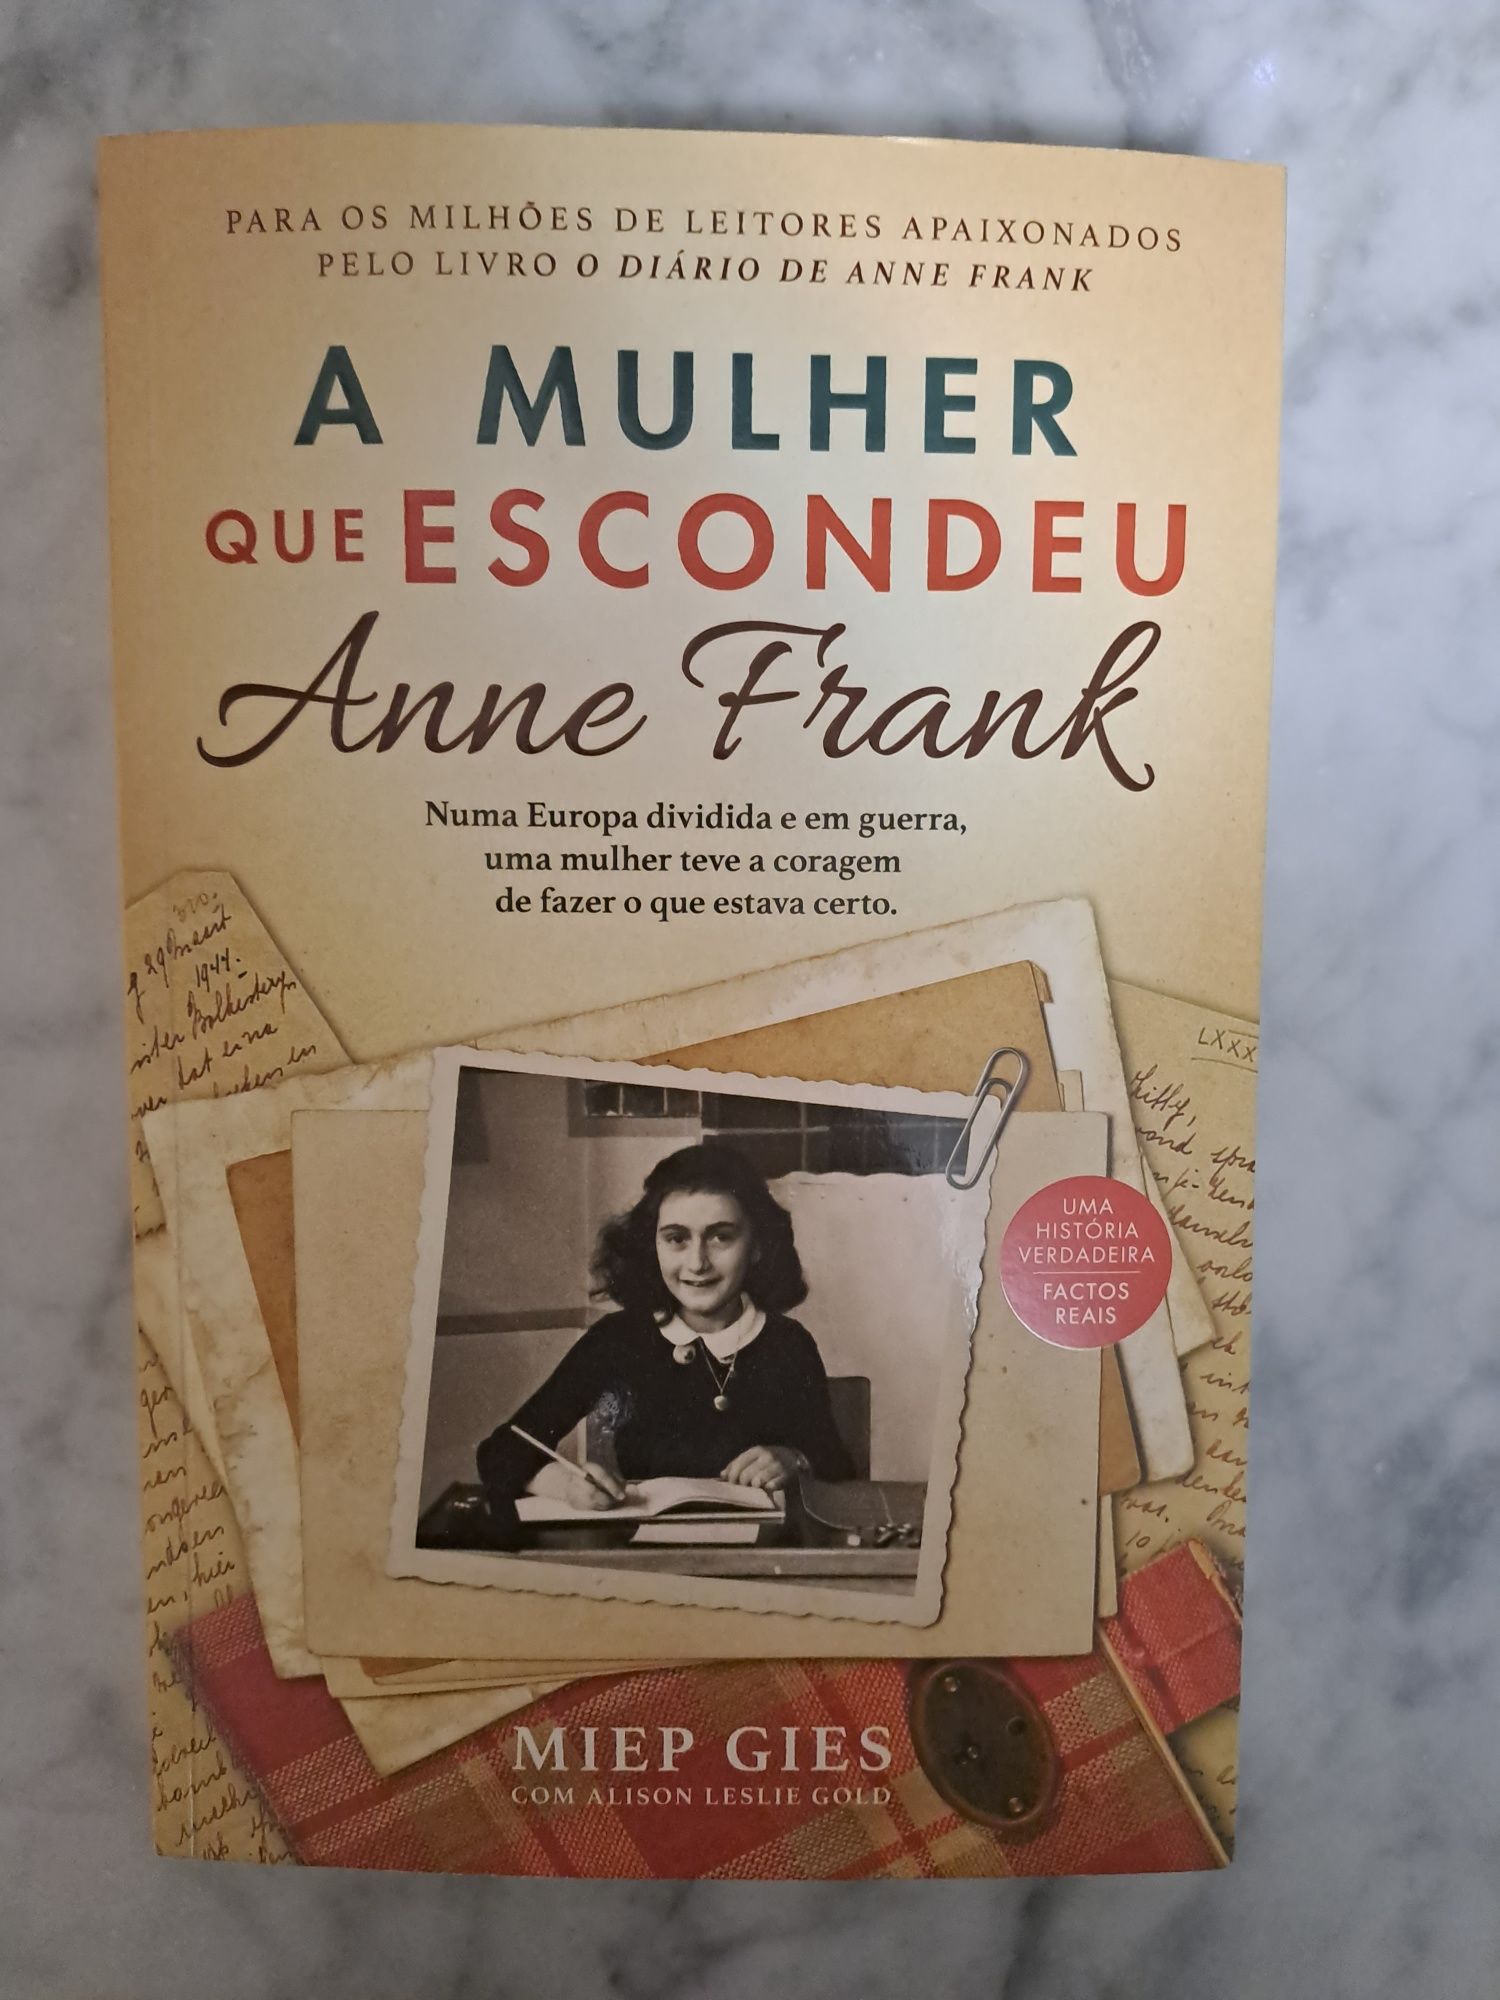 Livro "A Mulher que Escondeu Anne Frank"
de Miep Gies e Alison Leslie